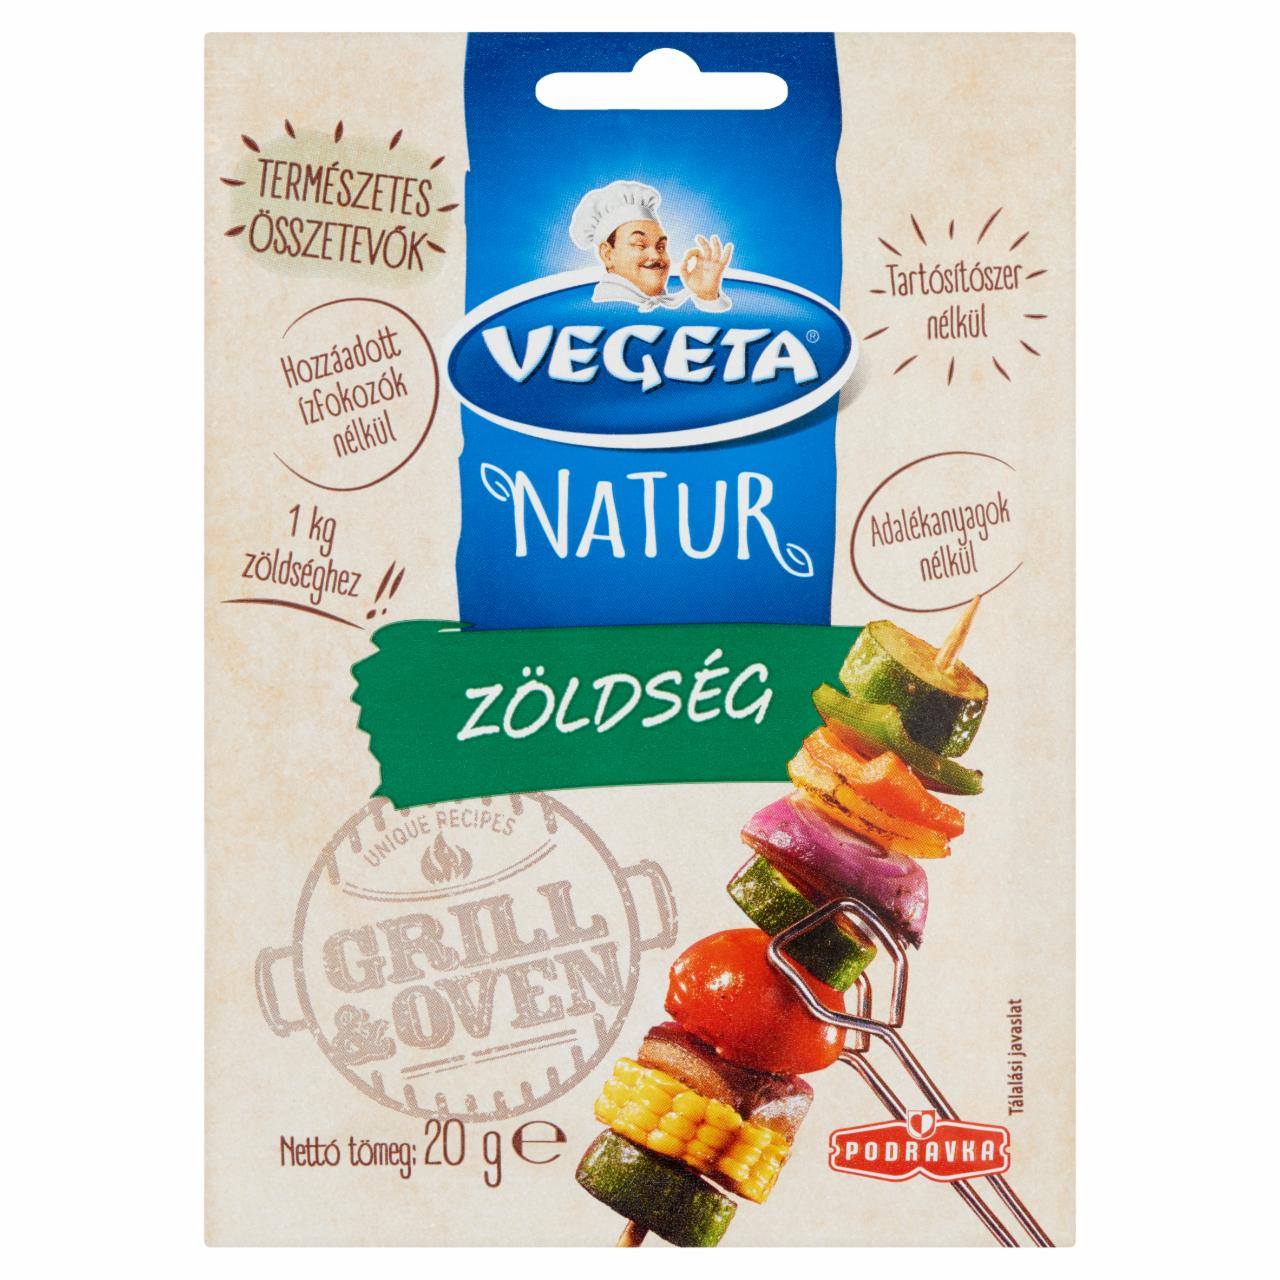 Képek - Vegeta Natur grill zöldség fűszerkeverék 20 g